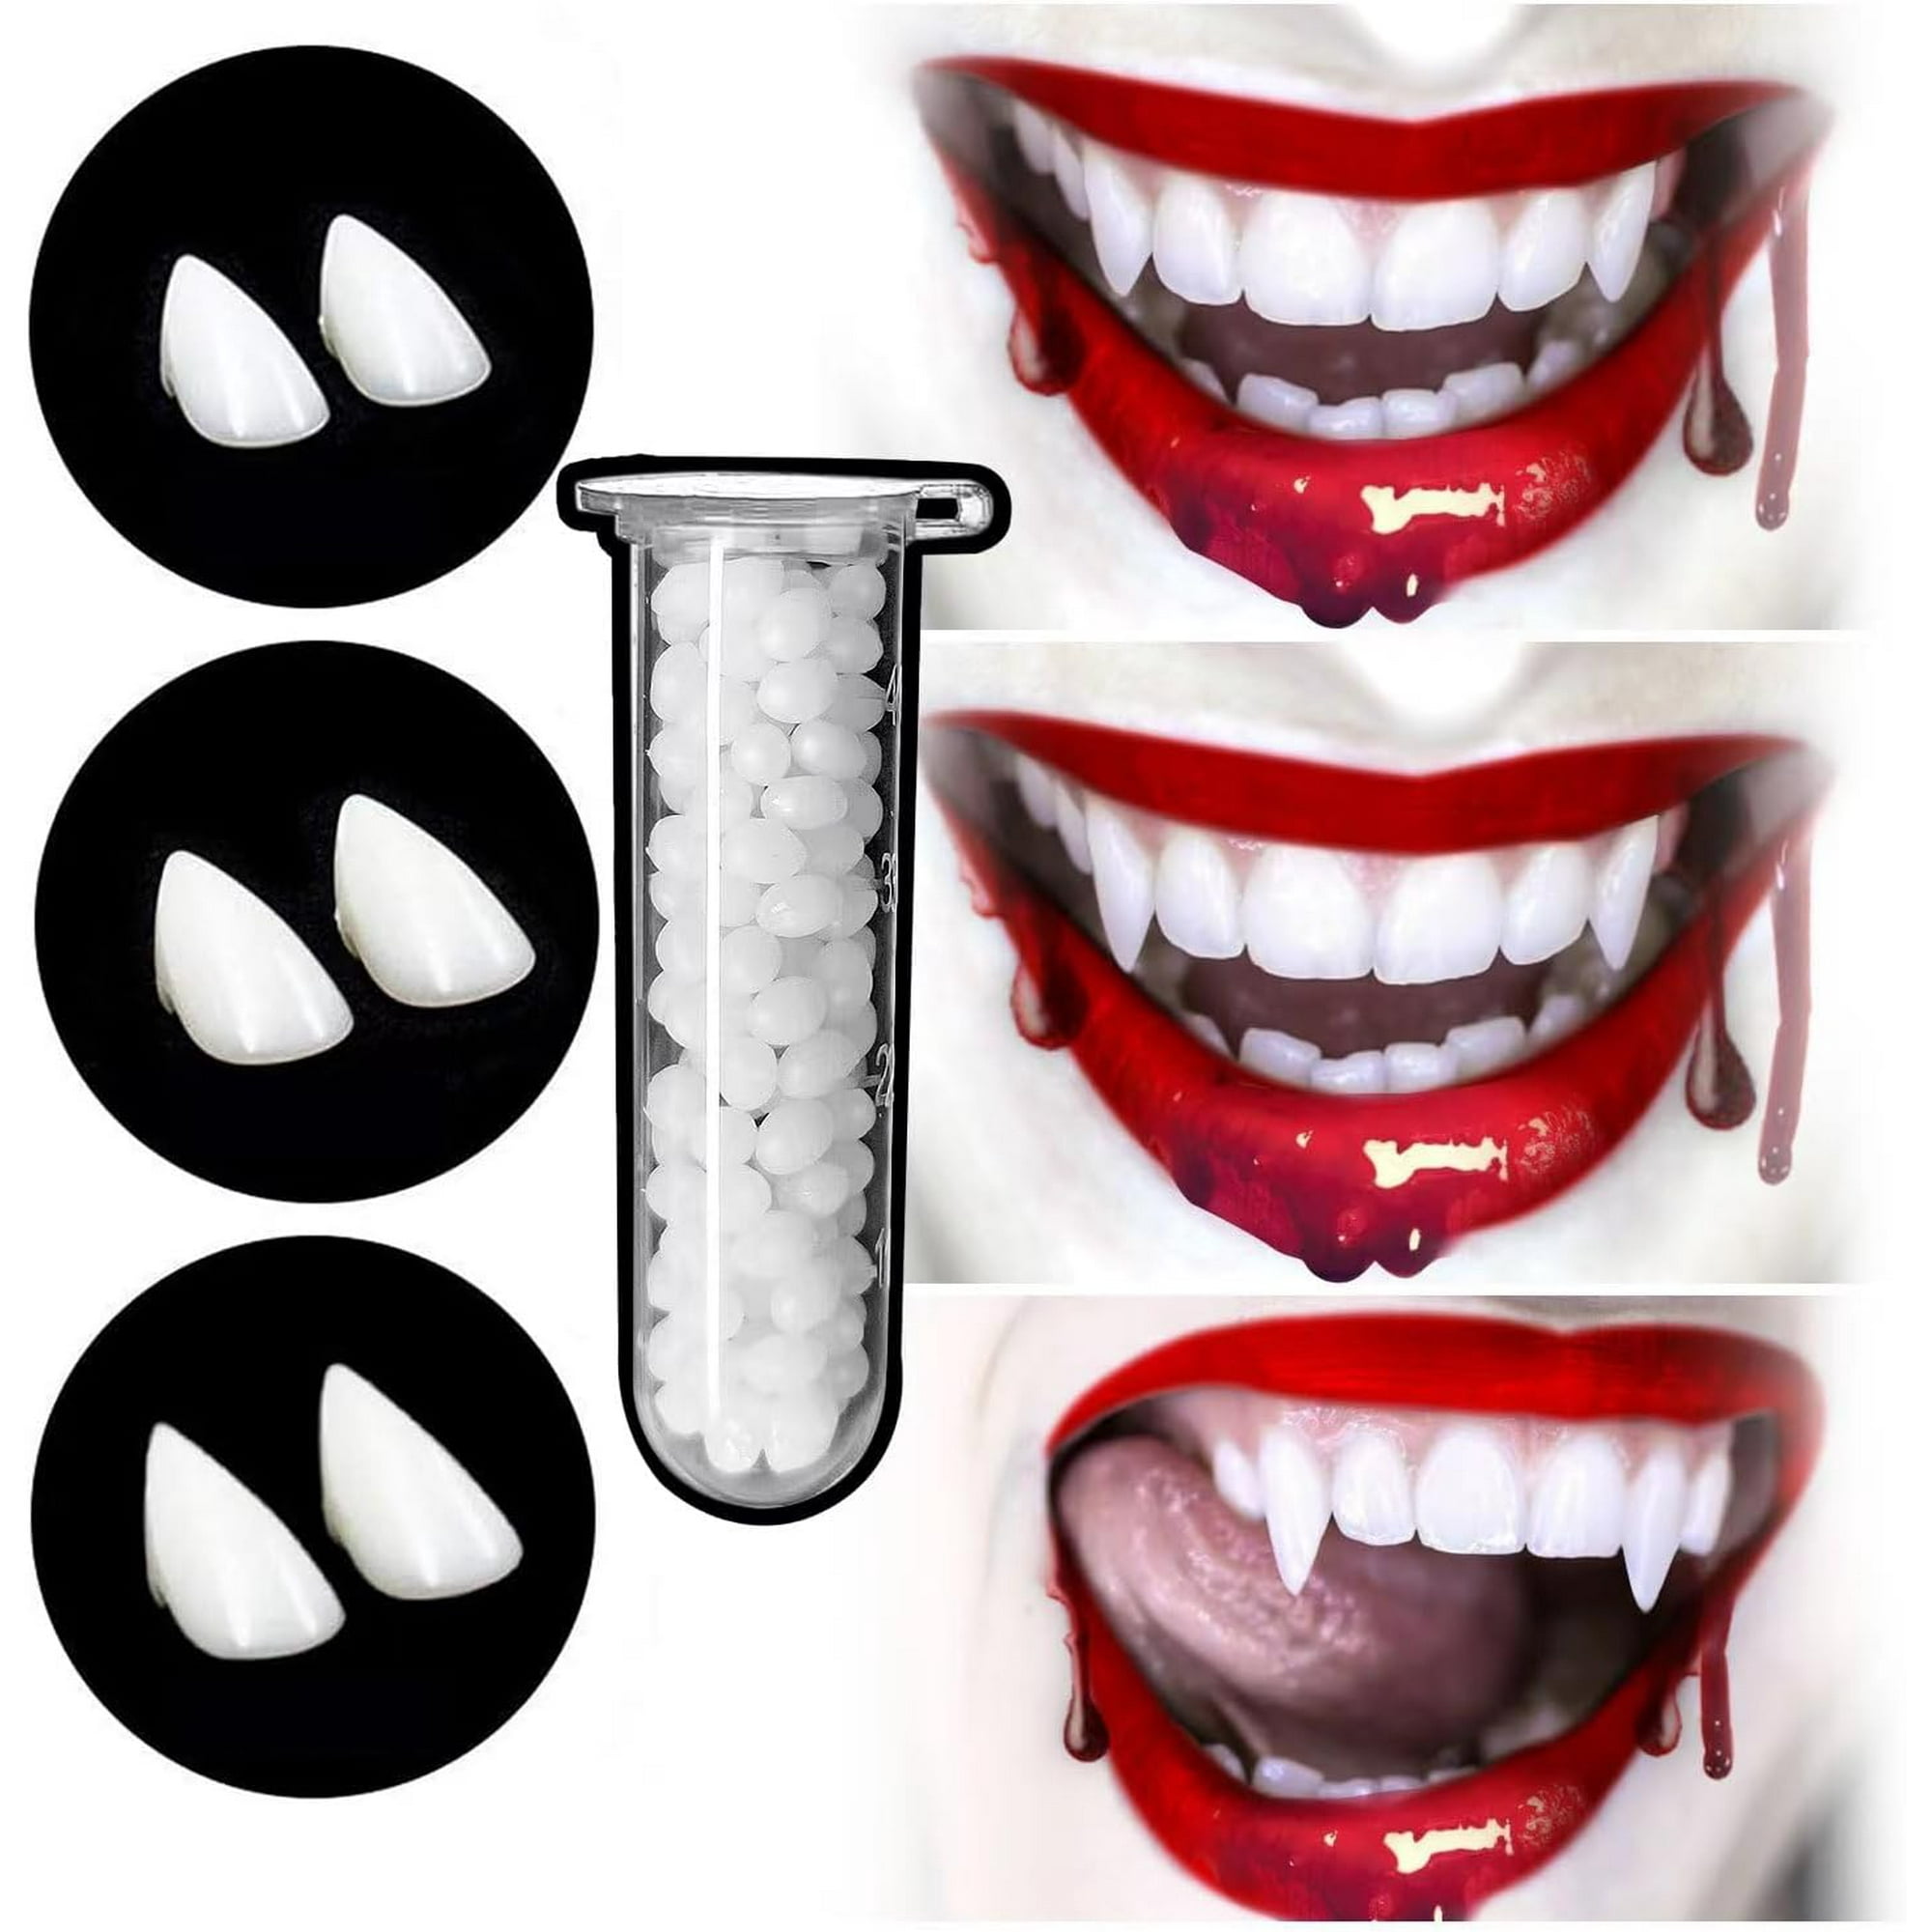  Nobie vivid 12 pares de dientes de vampiro con adhesivo,  decoraciones de Halloween, colmillos de vampiro, accesorios de cosplay para  fiesta de Halloween, 4 tamaños (0.512 in, 0.591 in, 0.669 in